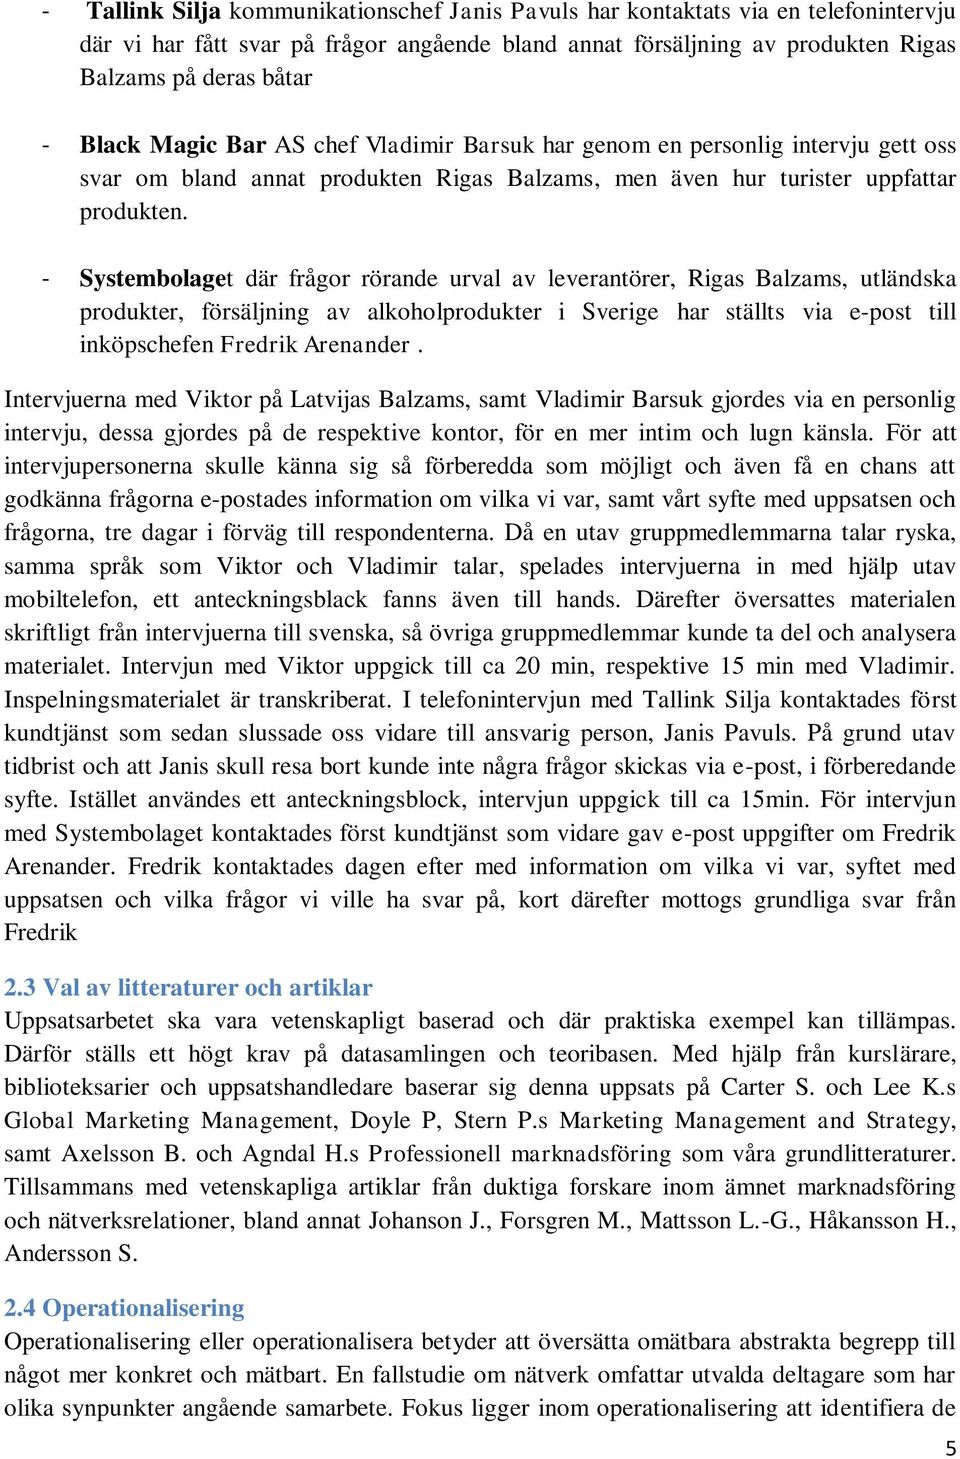 - Systembolaget där frågor rörande urval av leverantörer, Rigas Balzams, utländska produkter, försäljning av alkoholprodukter i Sverige har ställts via e-post till inköpschefen Fredrik Arenander.